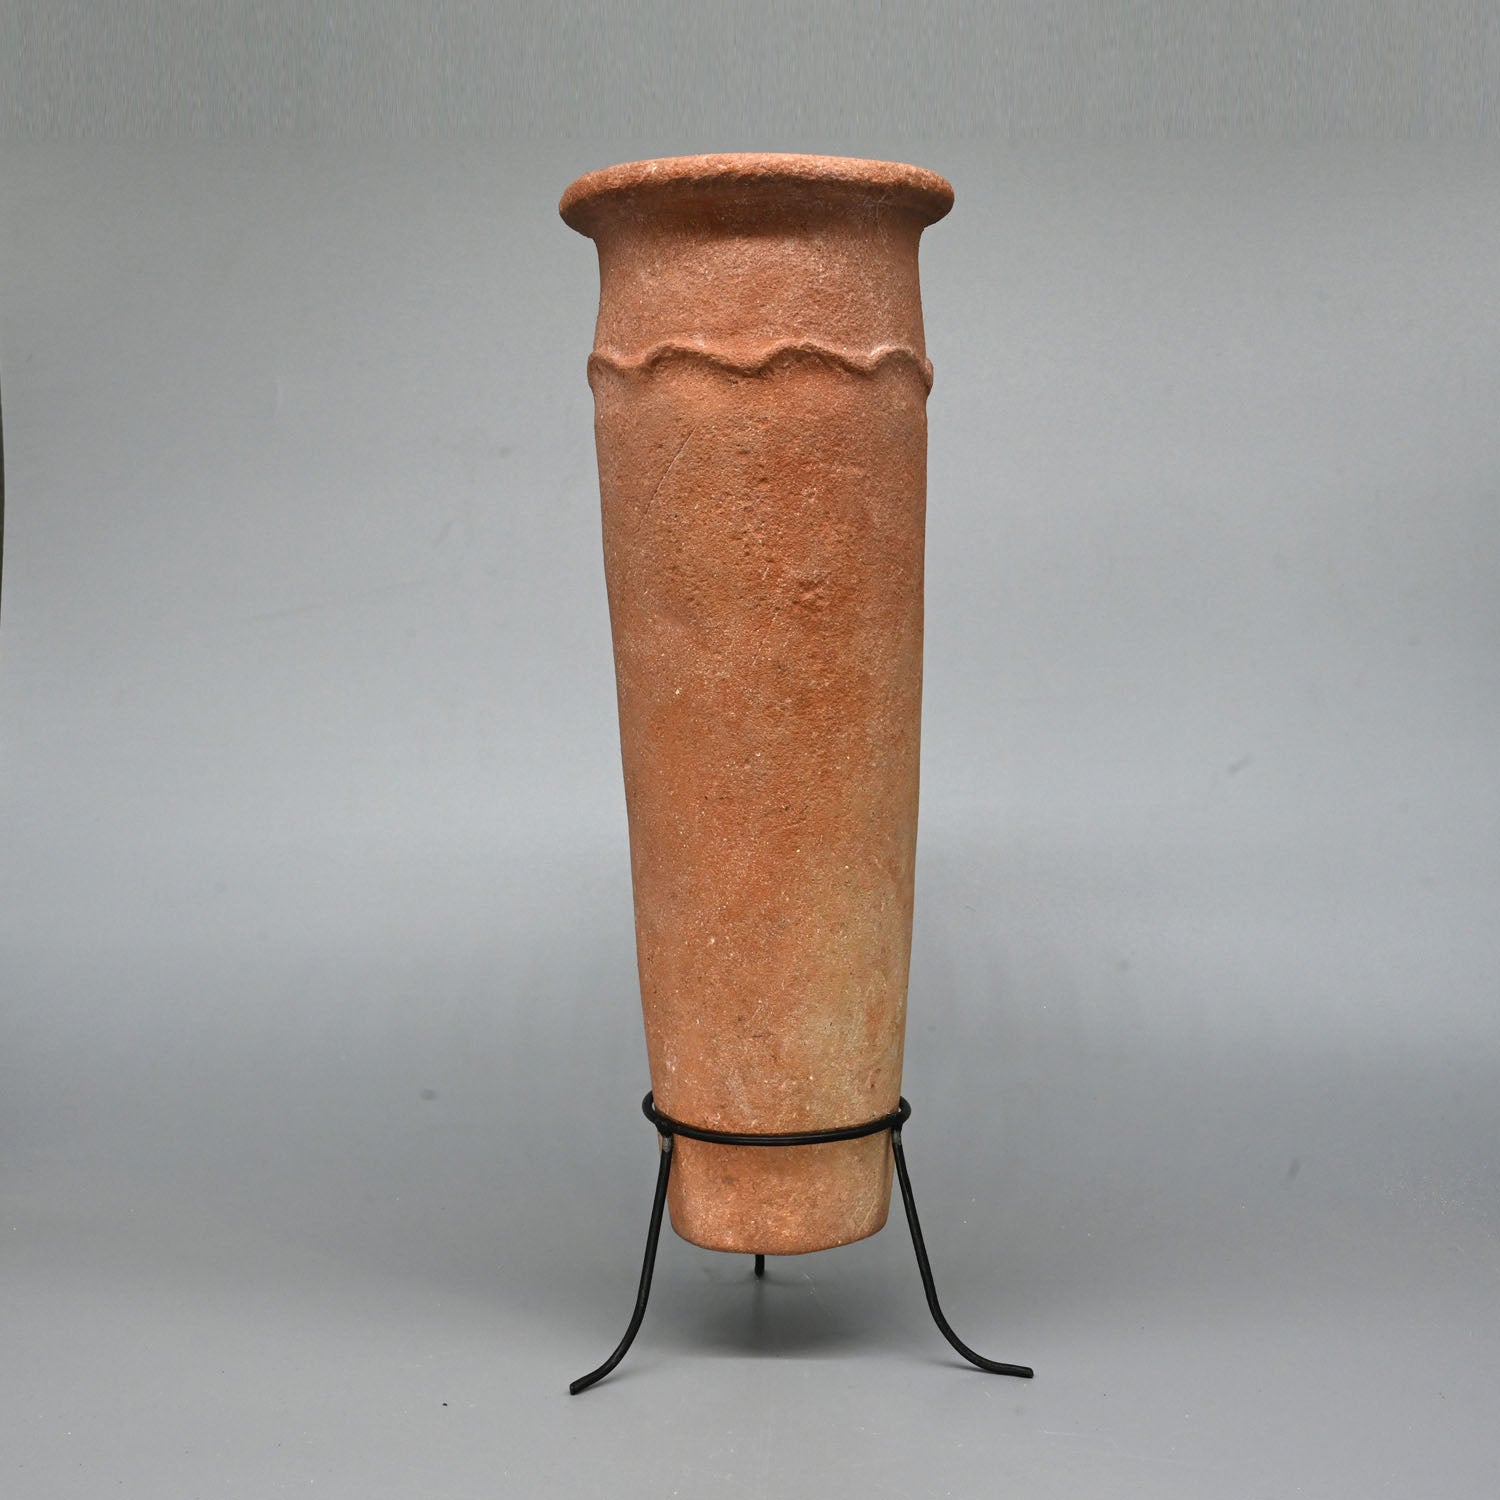 Ein ägyptischer prädynastischer zylindrischer Tonkrug aus Nilton, vordynastische Zeit, ca. 3100 - 3000 v. Chr